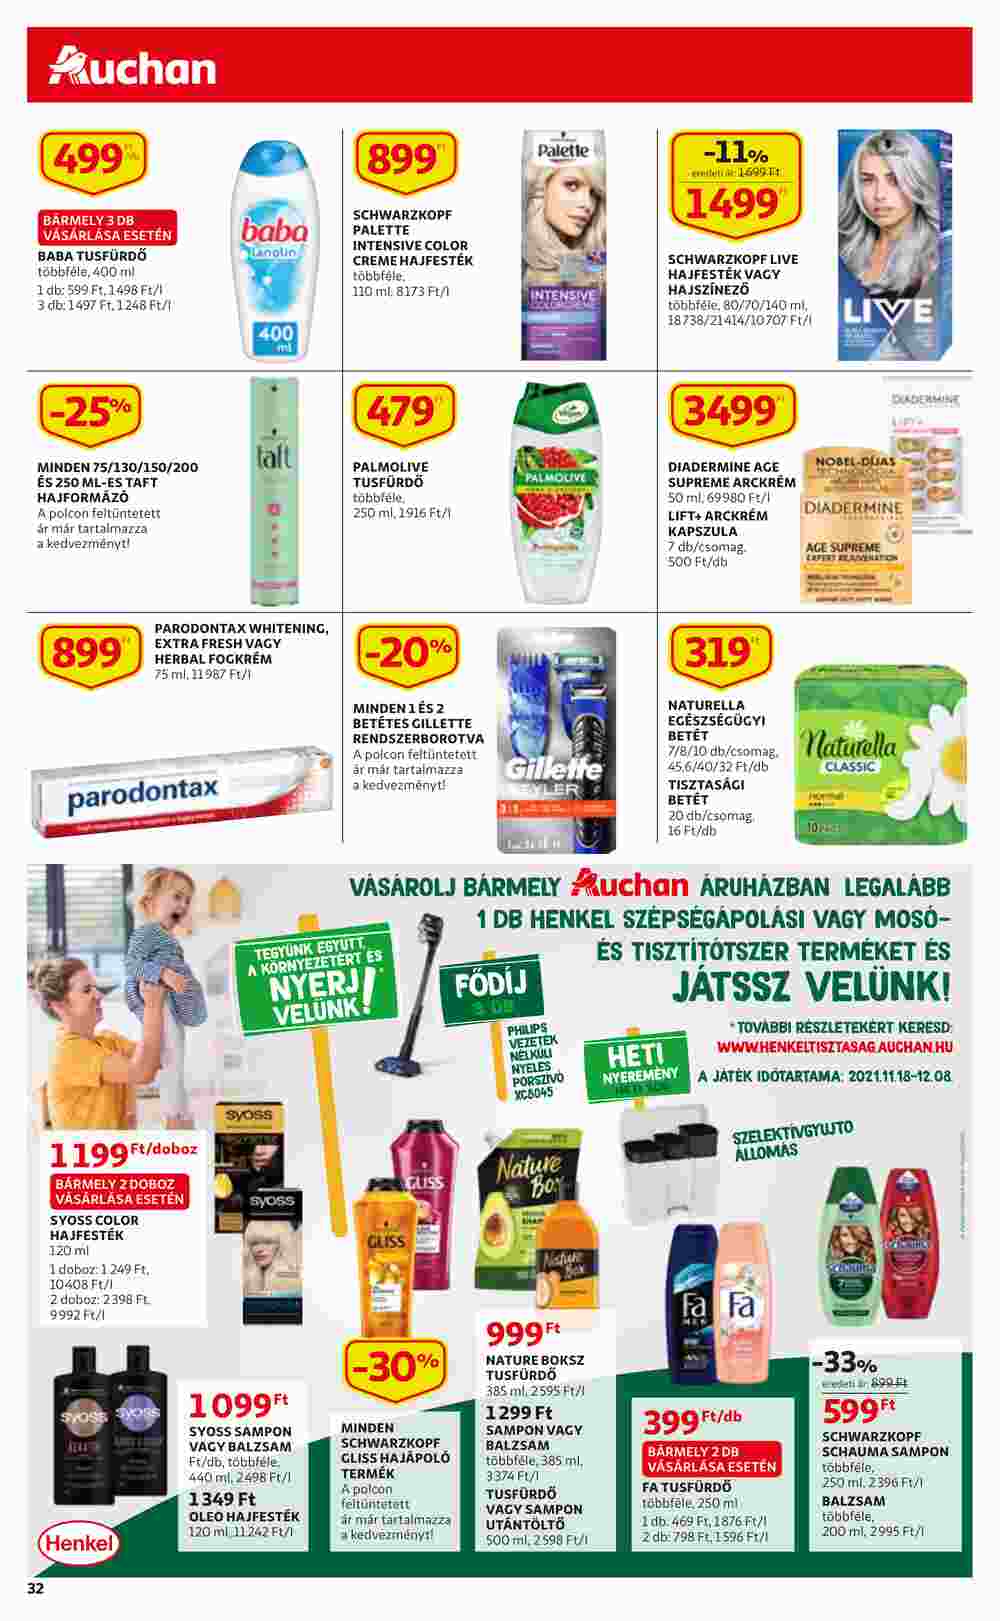 Auchan akciós újság 2021.11.25-től - 32. oldal.